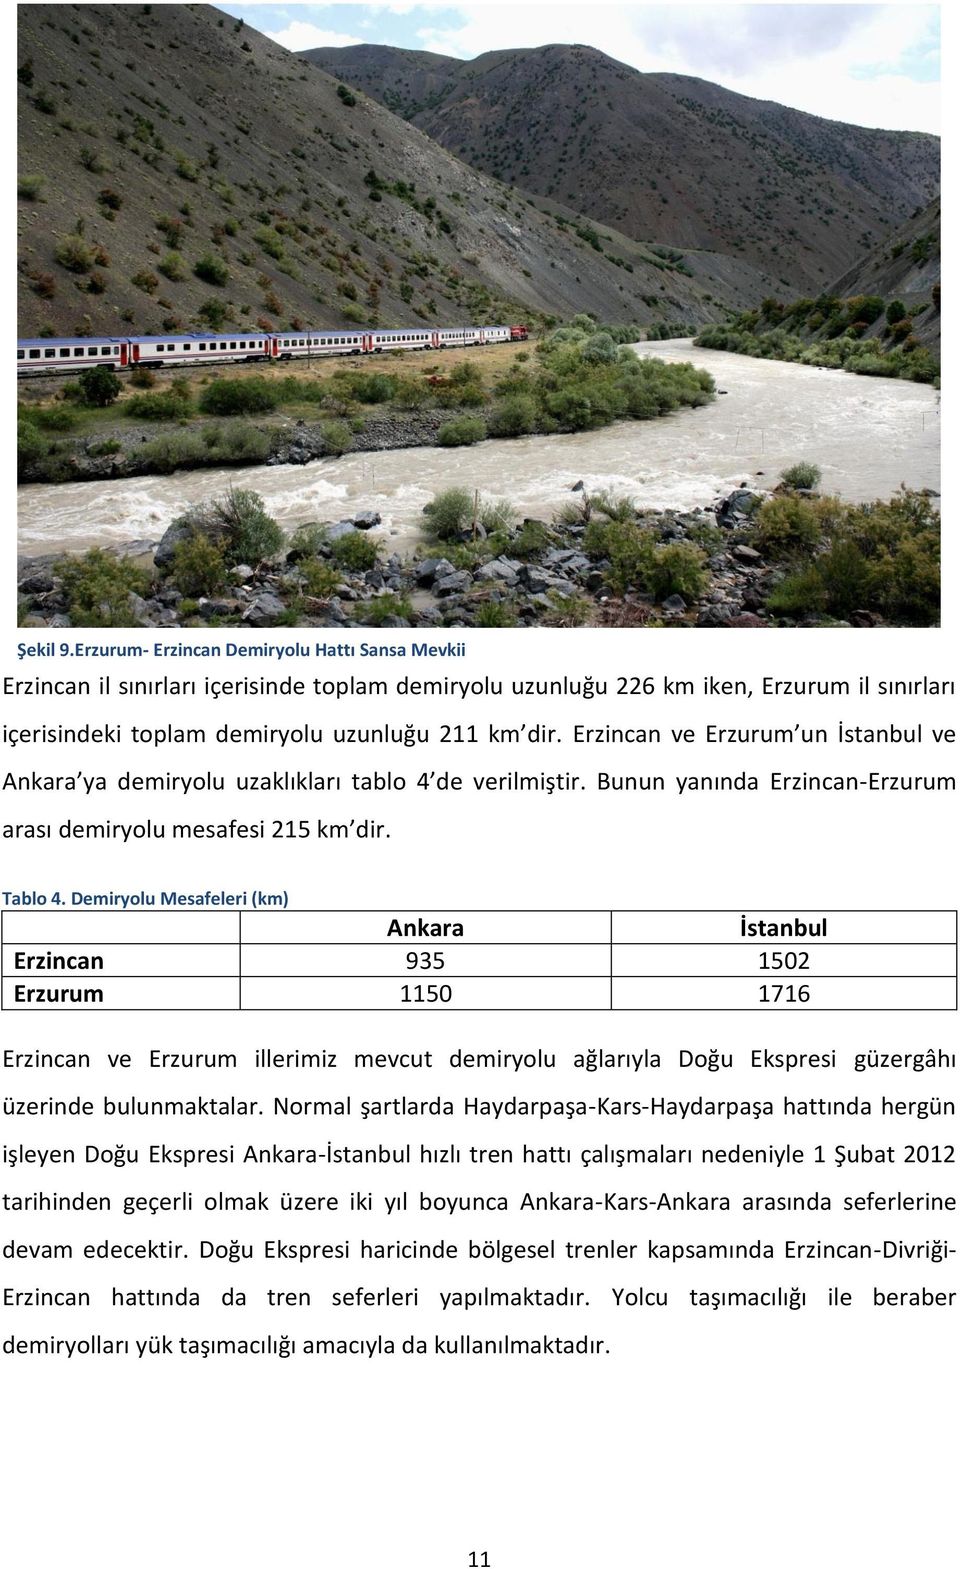 Demiryolu Mesafeleri (km) Ankara İstanbul Erzincan 935 1502 Erzurum 1150 1716 Erzincan ve Erzurum illerimiz mevcut demiryolu ağlarıyla Doğu Ekspresi güzergâhı üzerinde bulunmaktalar.